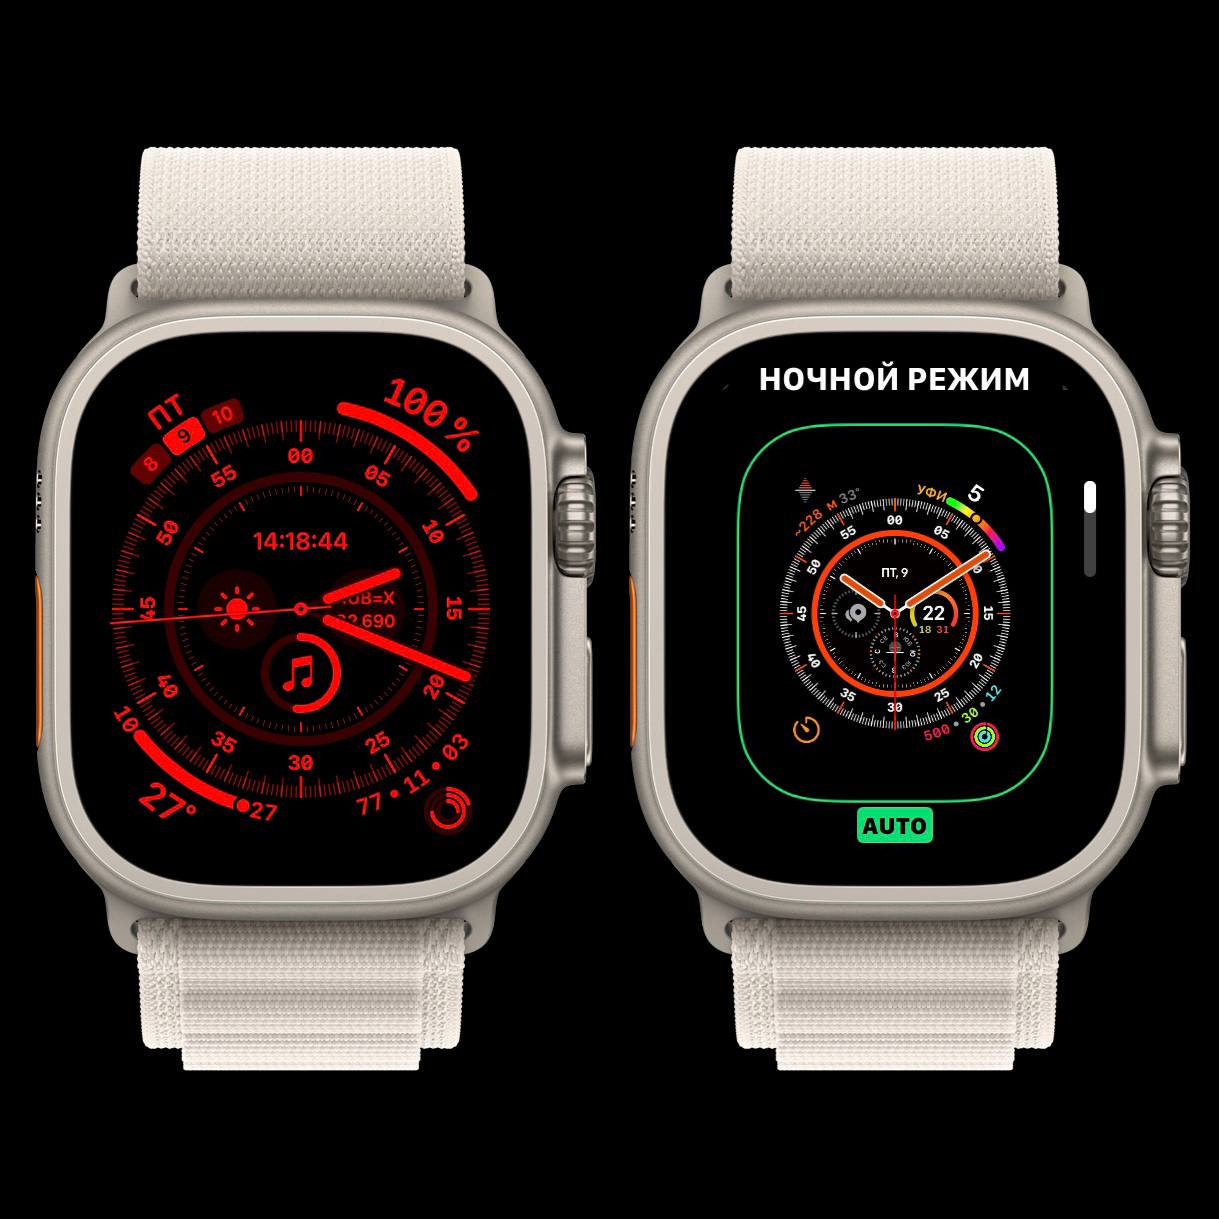 Так как поворот Digital Crown теперь выполняет функцию вызова виджетов, ночной режим циферблата «Проводник» у Apple Watch Ultra на watchOS 10 активируется автоматически благодаря датчику освещения, либо вручную в настройках редактирования циферблата